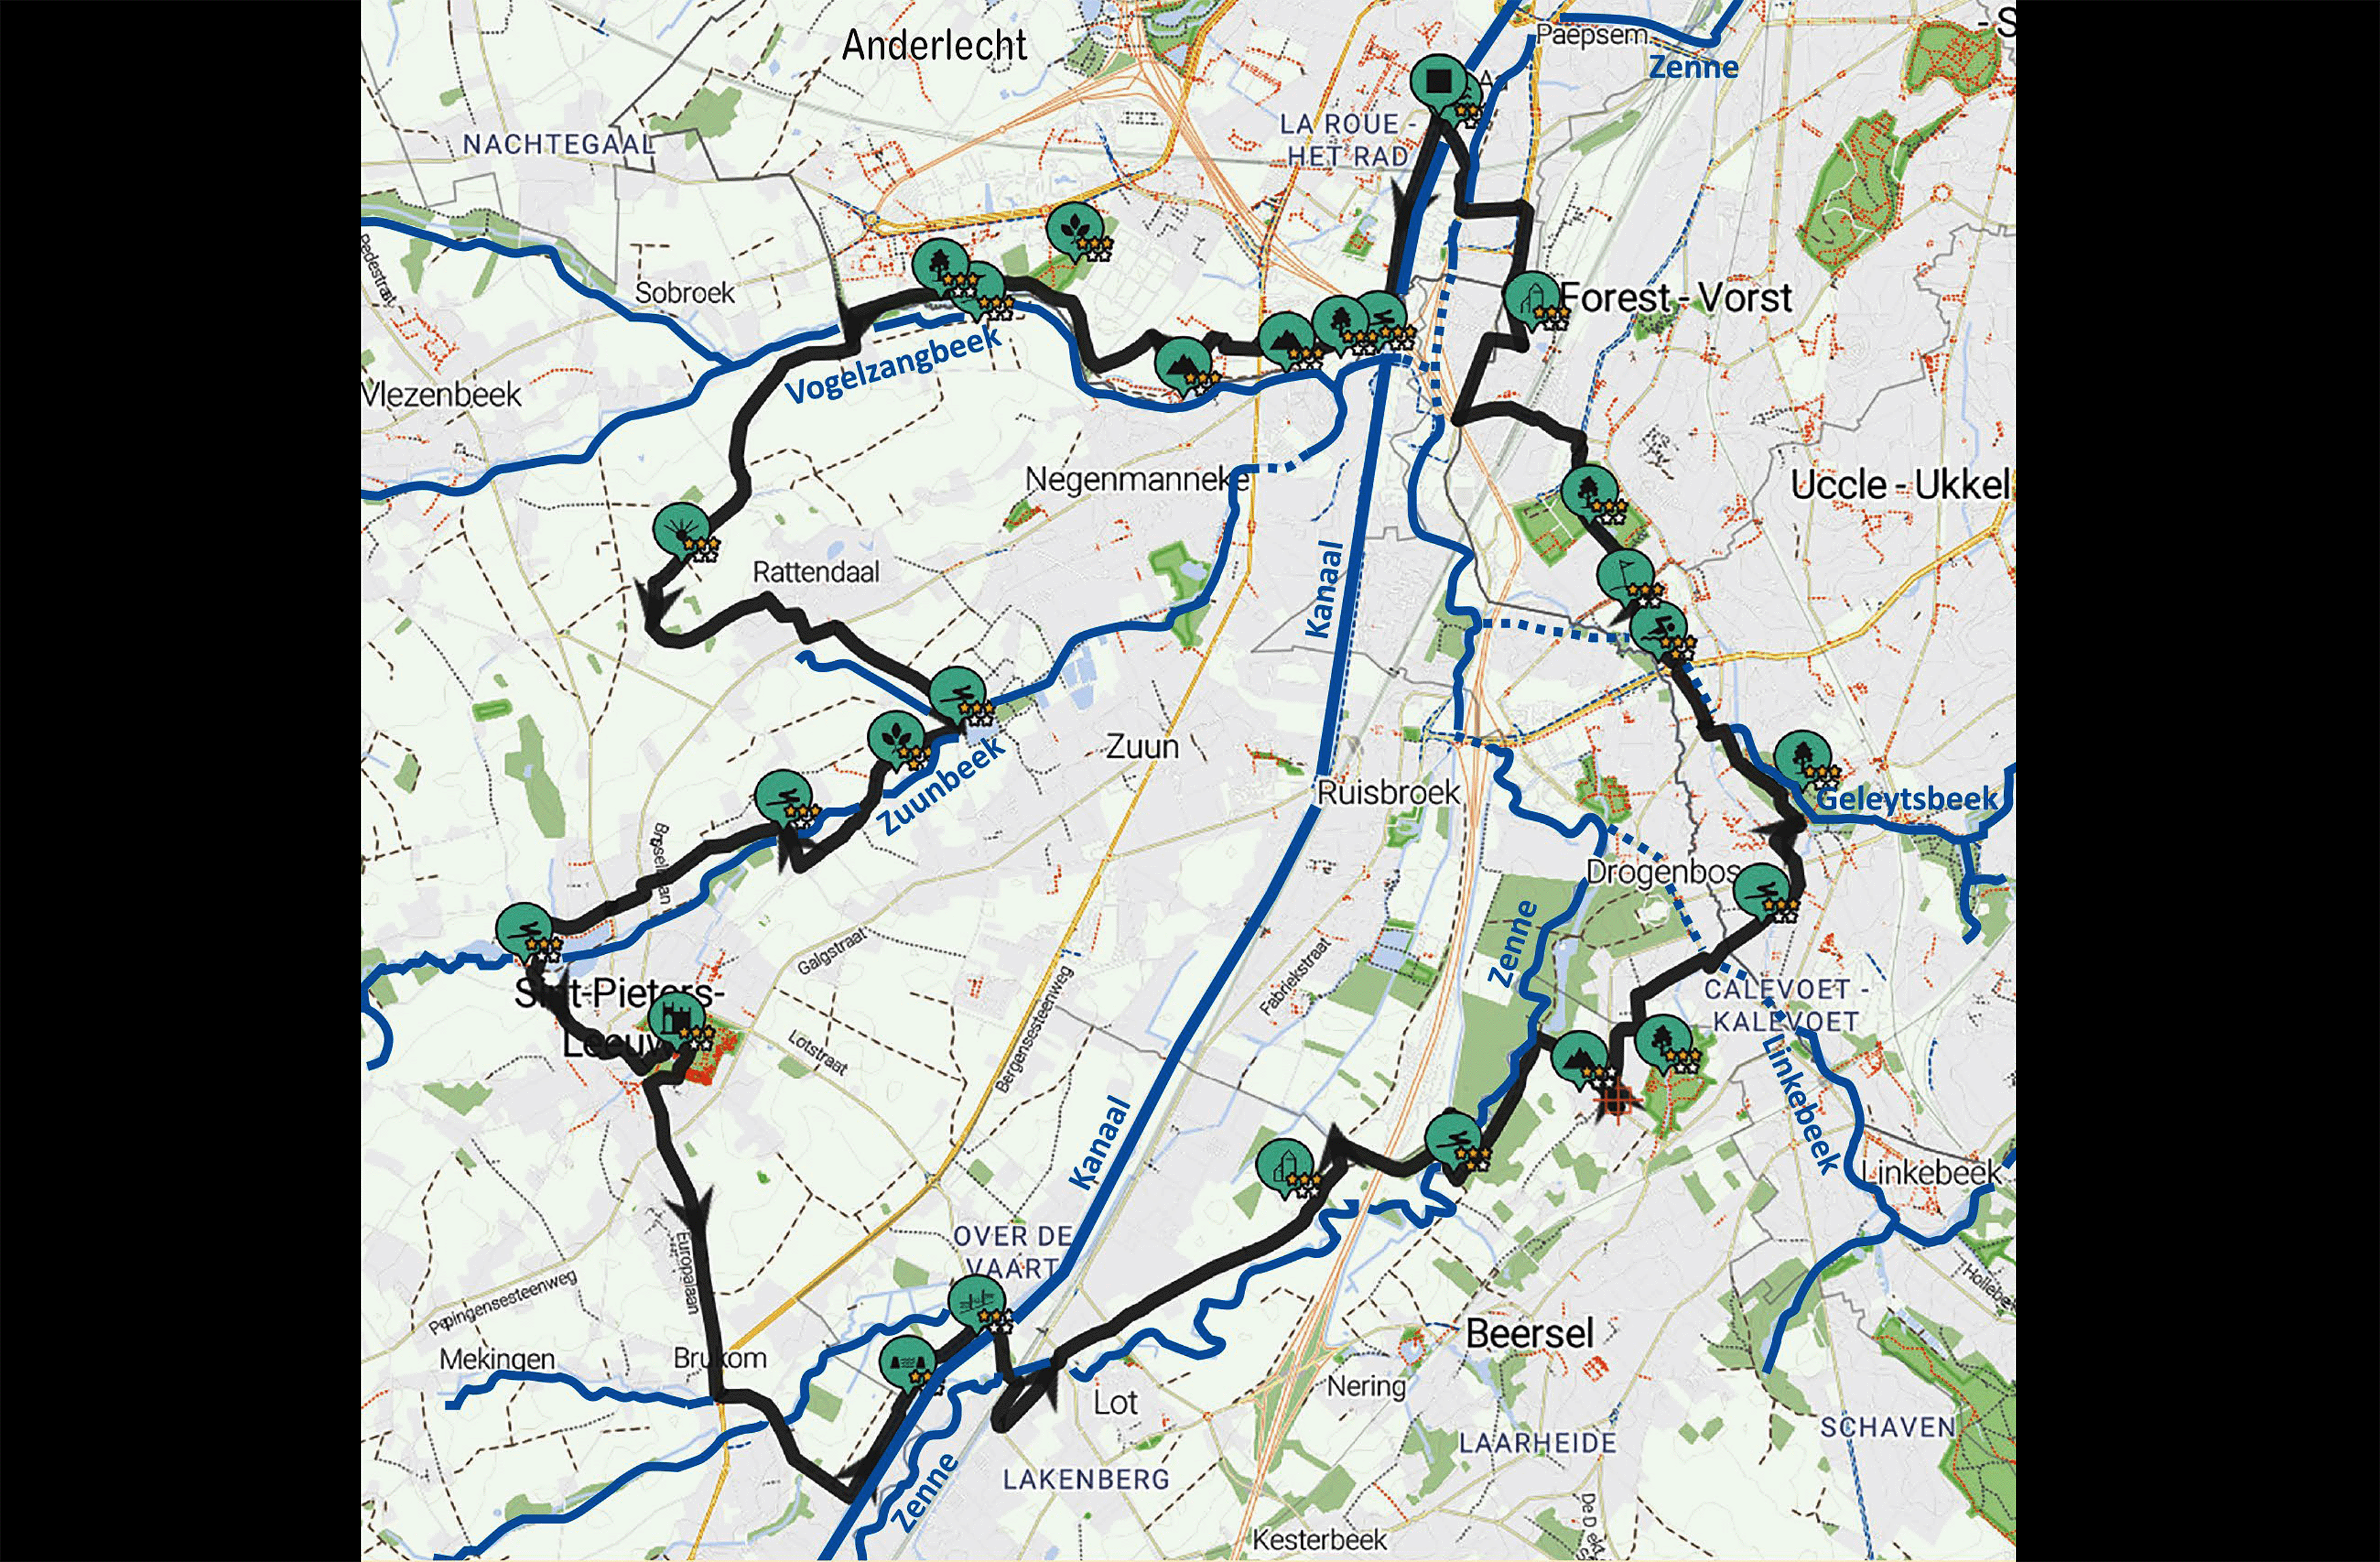 Coördinatie Zenne, Kanaaltochten Brabant en de gemeente Anderlecht hebben op 31 mei 2023 het parcours van een nieuwe interregionale fietslus van 29 kilometer onthuld